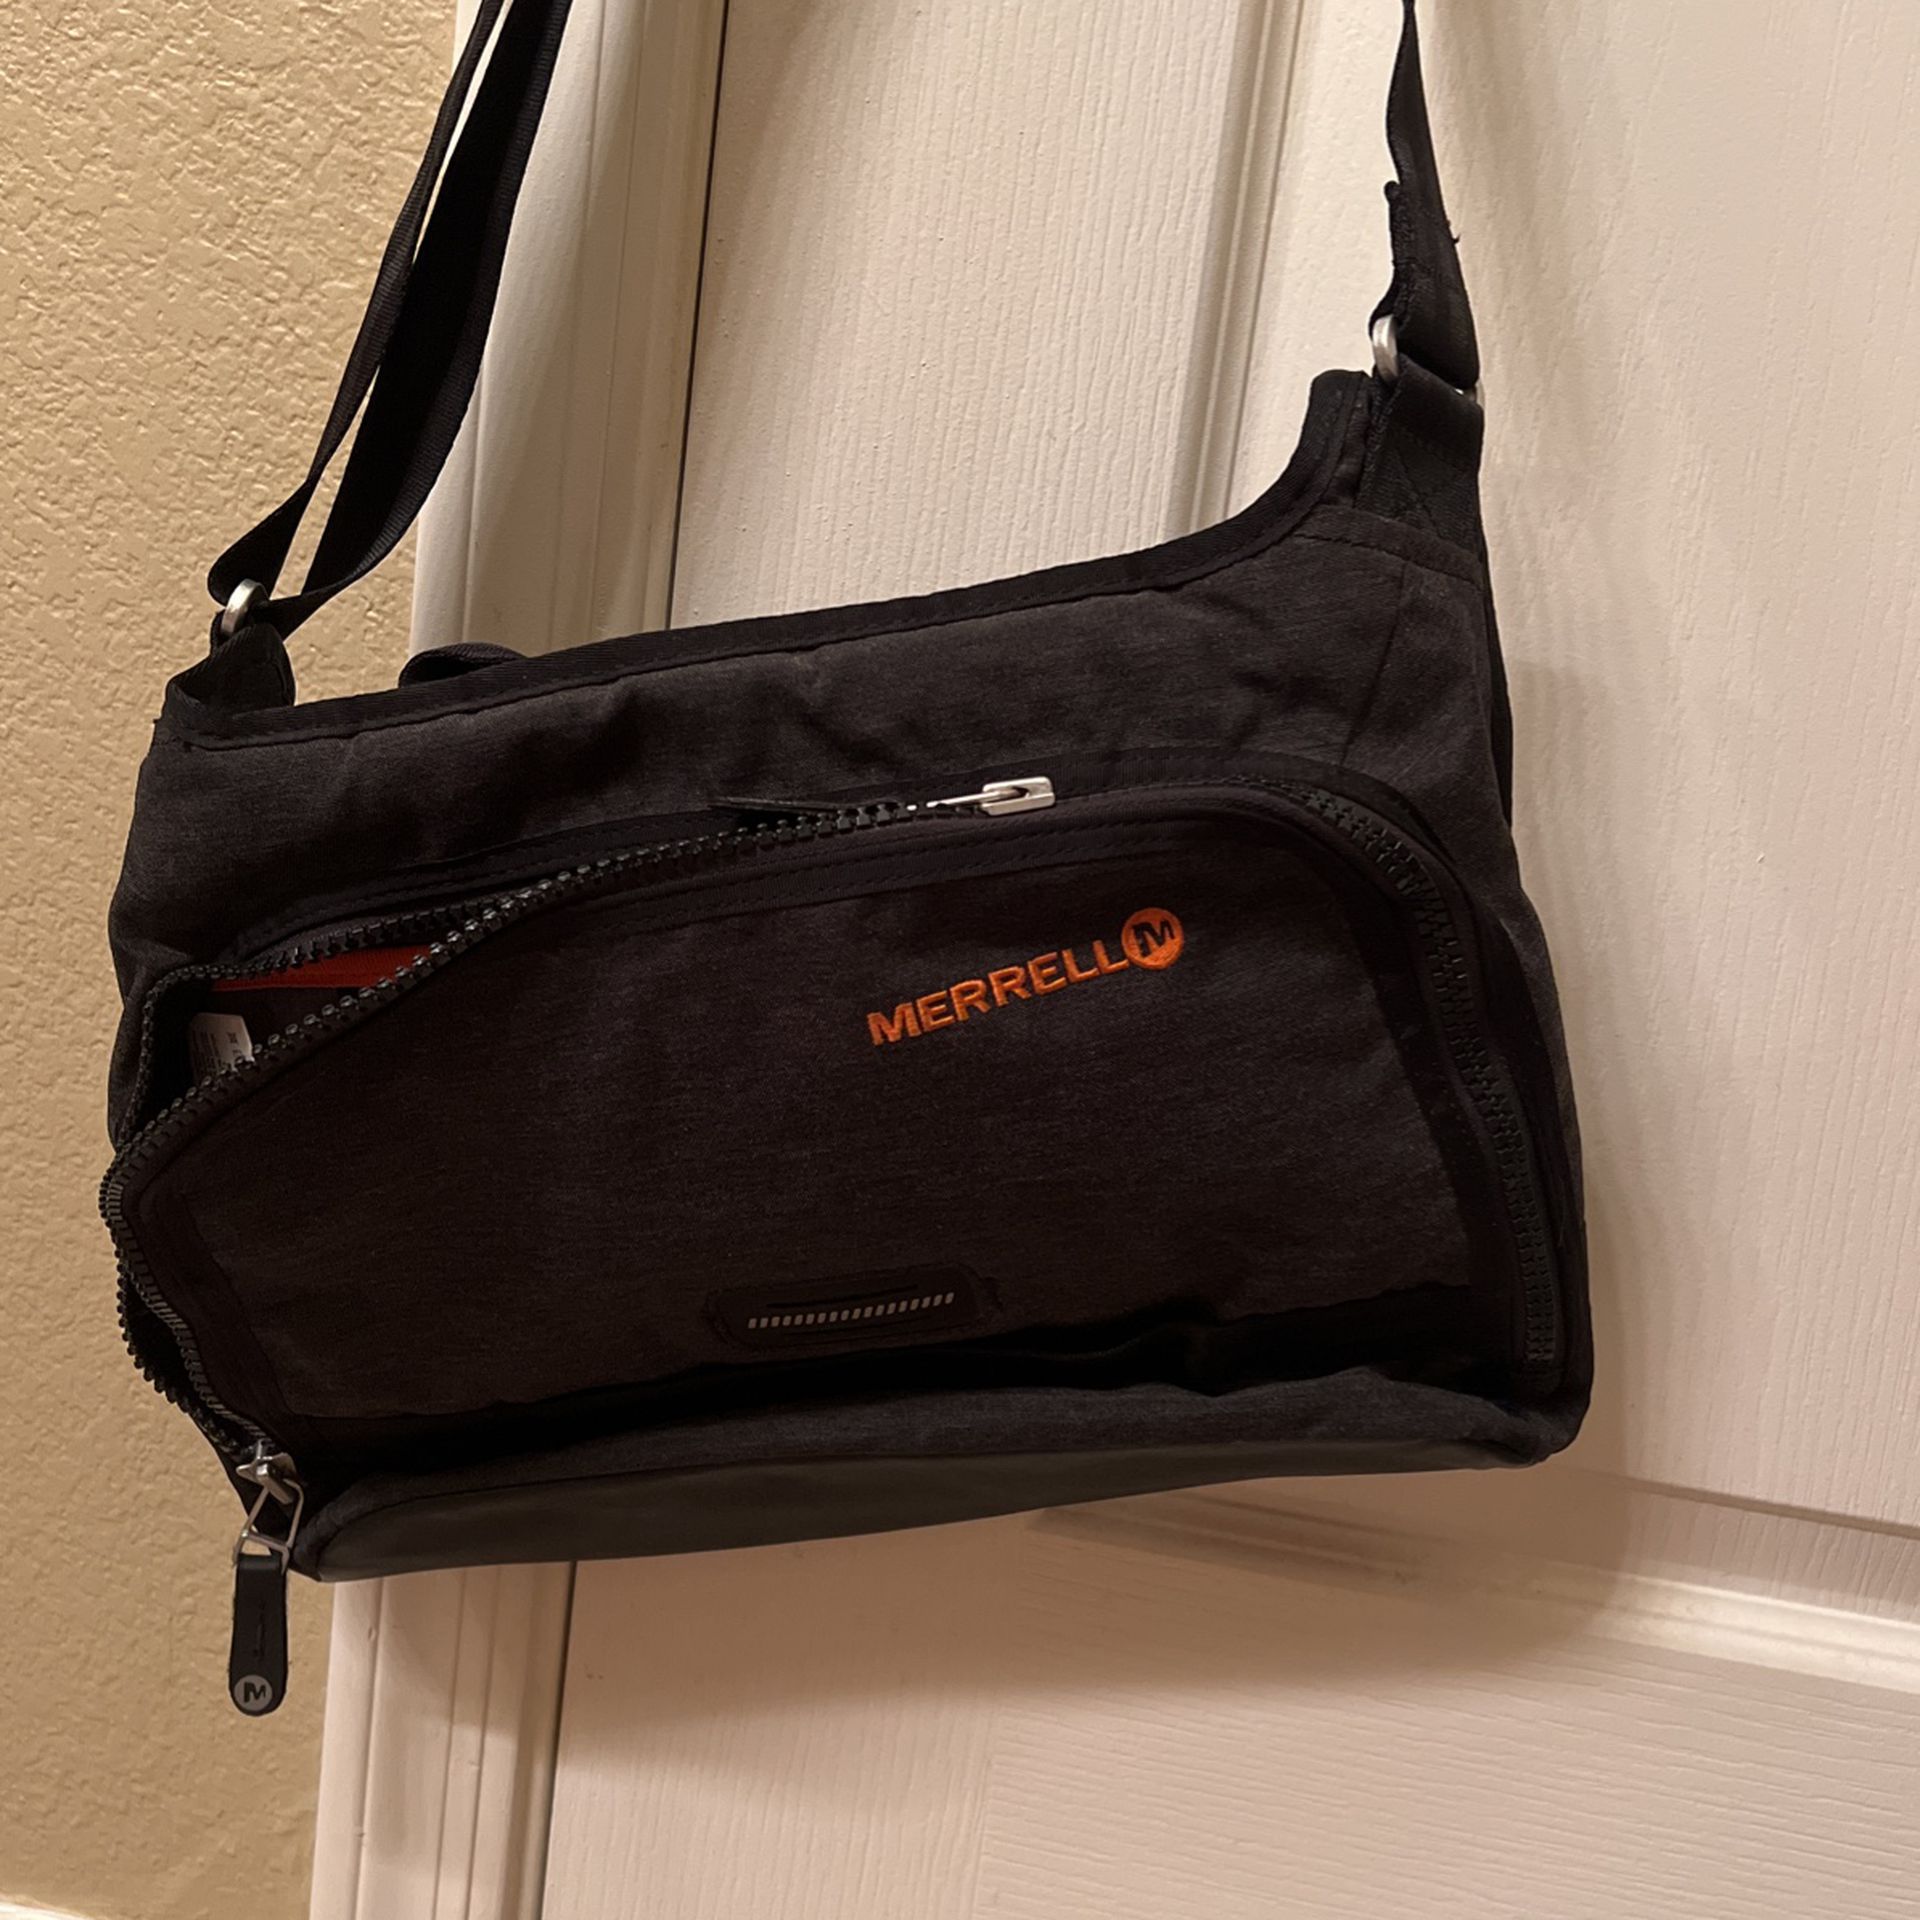 Merrell Messenger Bag